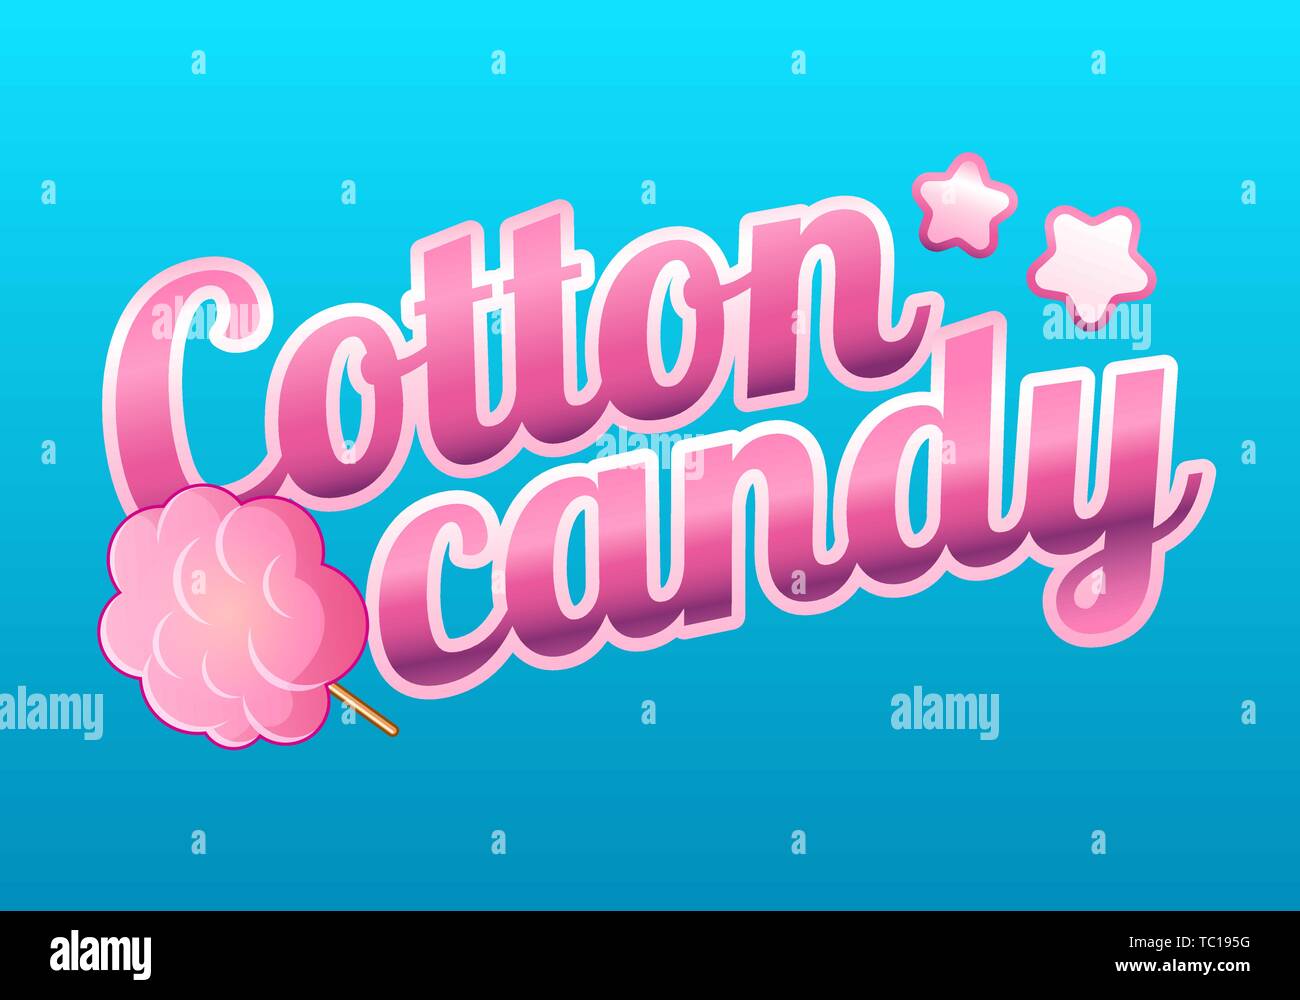 Cotone colorato negozio di dolciumi logo, l'etichetta o l'emblema in stile cartoon. Concetto per poster, striscioni, imballaggio e pacchetti, pubblicità. Vettore Illustrazione Vettoriale